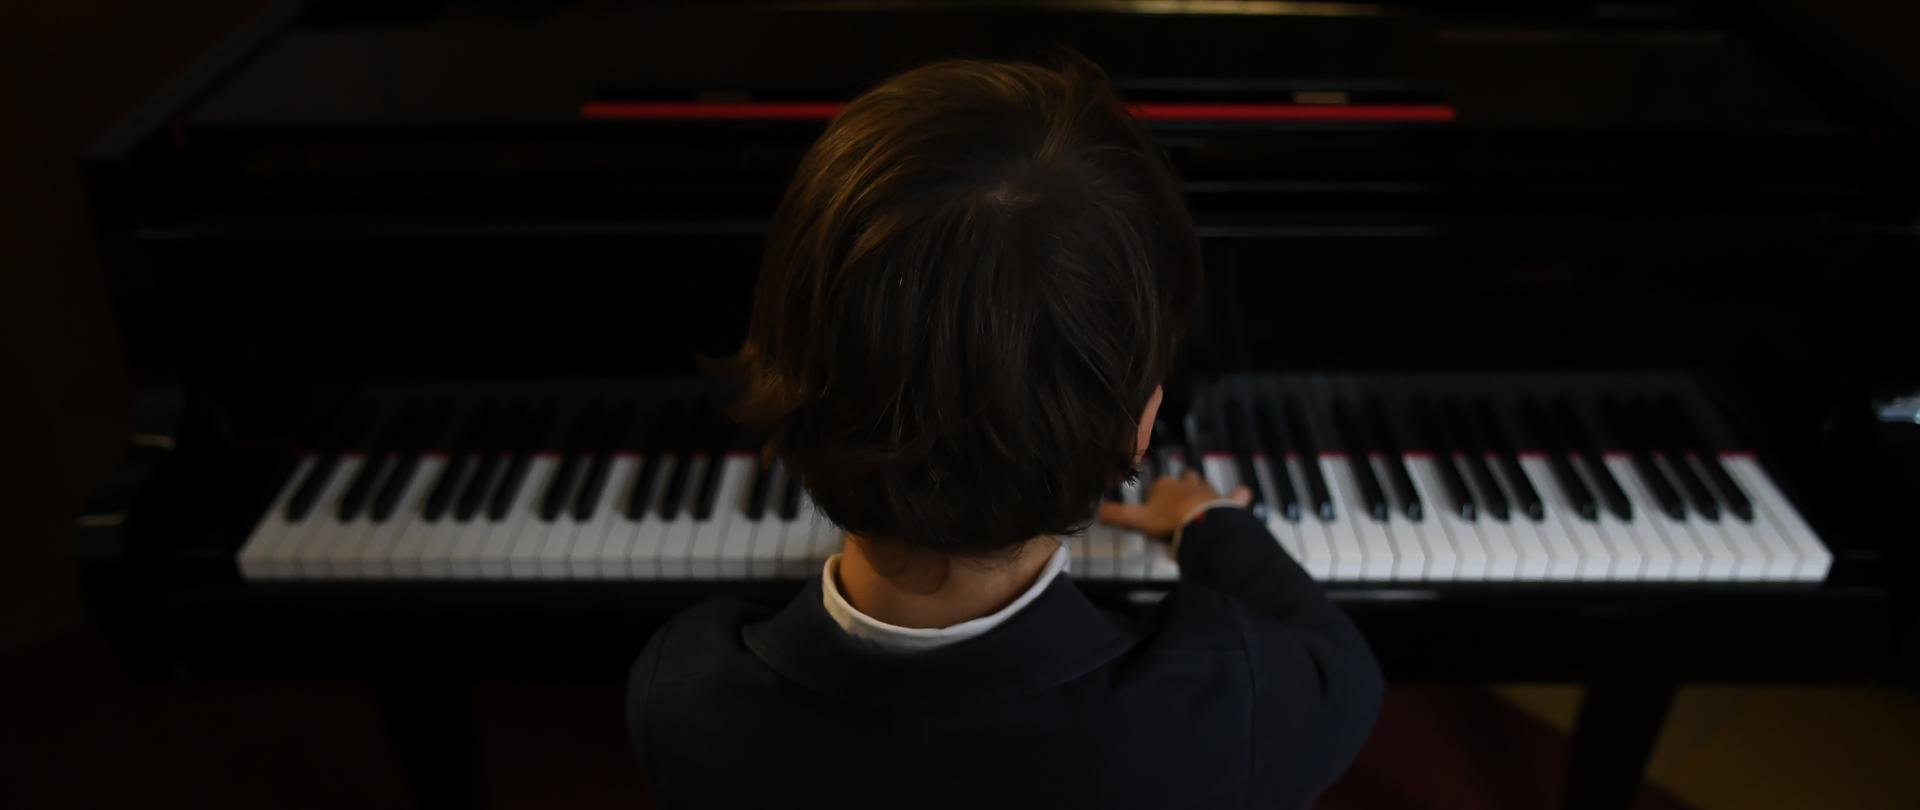 fotografia przedstawia ciemnowłosego chłopca siedzącego przy fortepianie ubranego w ciemny sweter 